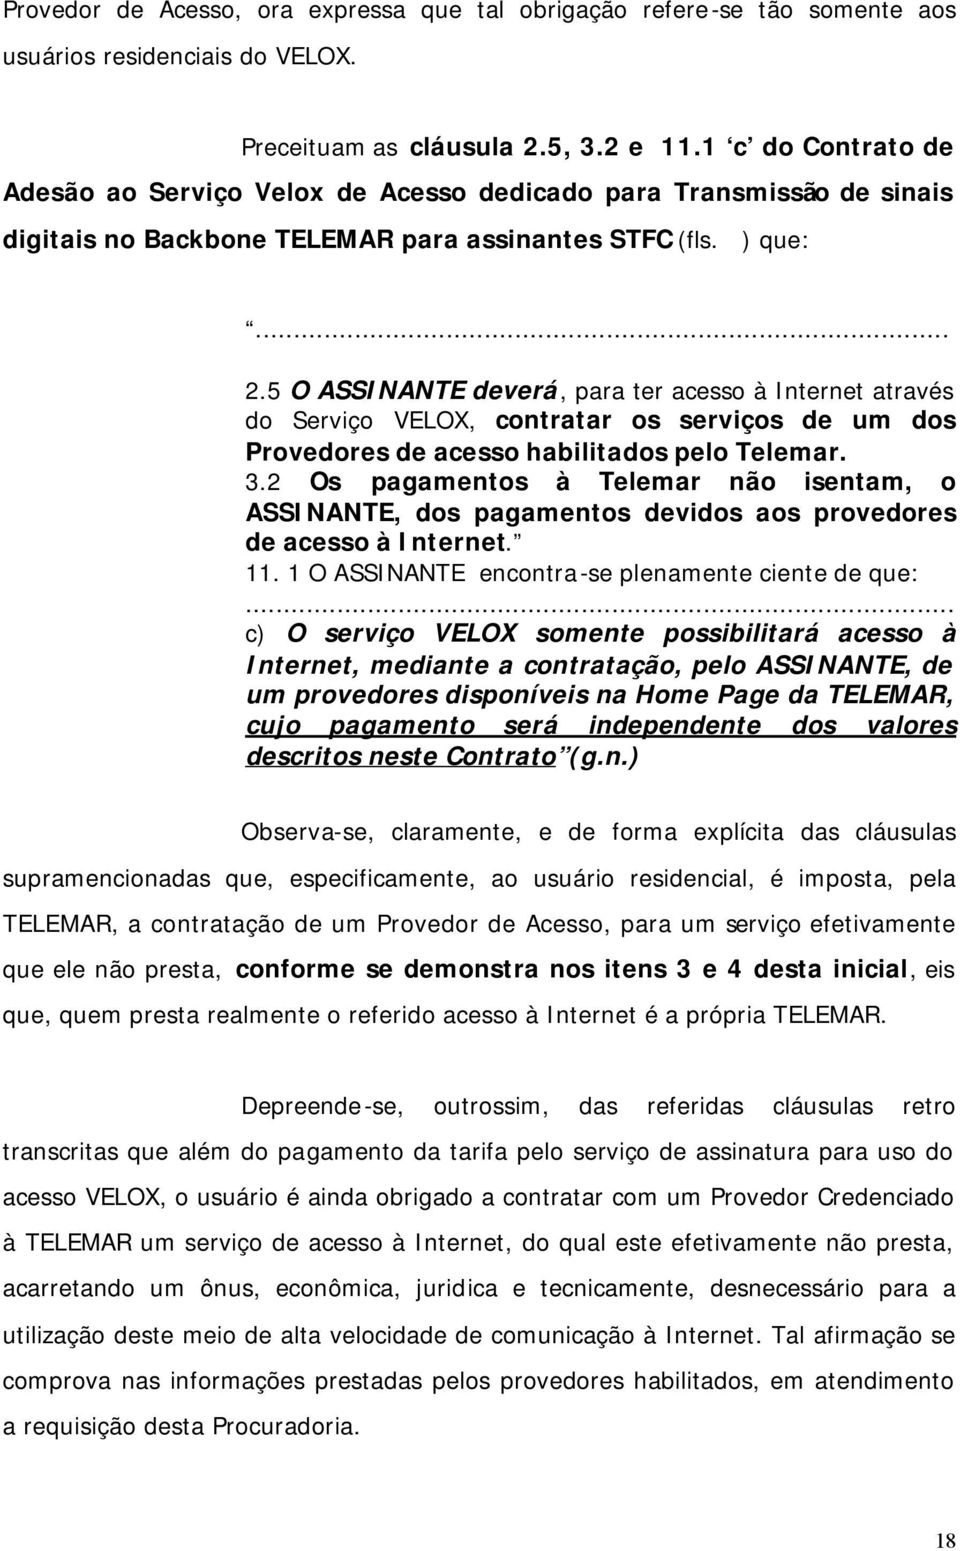 5 O ASSINANTE deverá, para ter acesso à Internet através do Serviço VELOX, contratar os serviços de um dos Provedores de acesso habilitados pelo Telemar. 3.